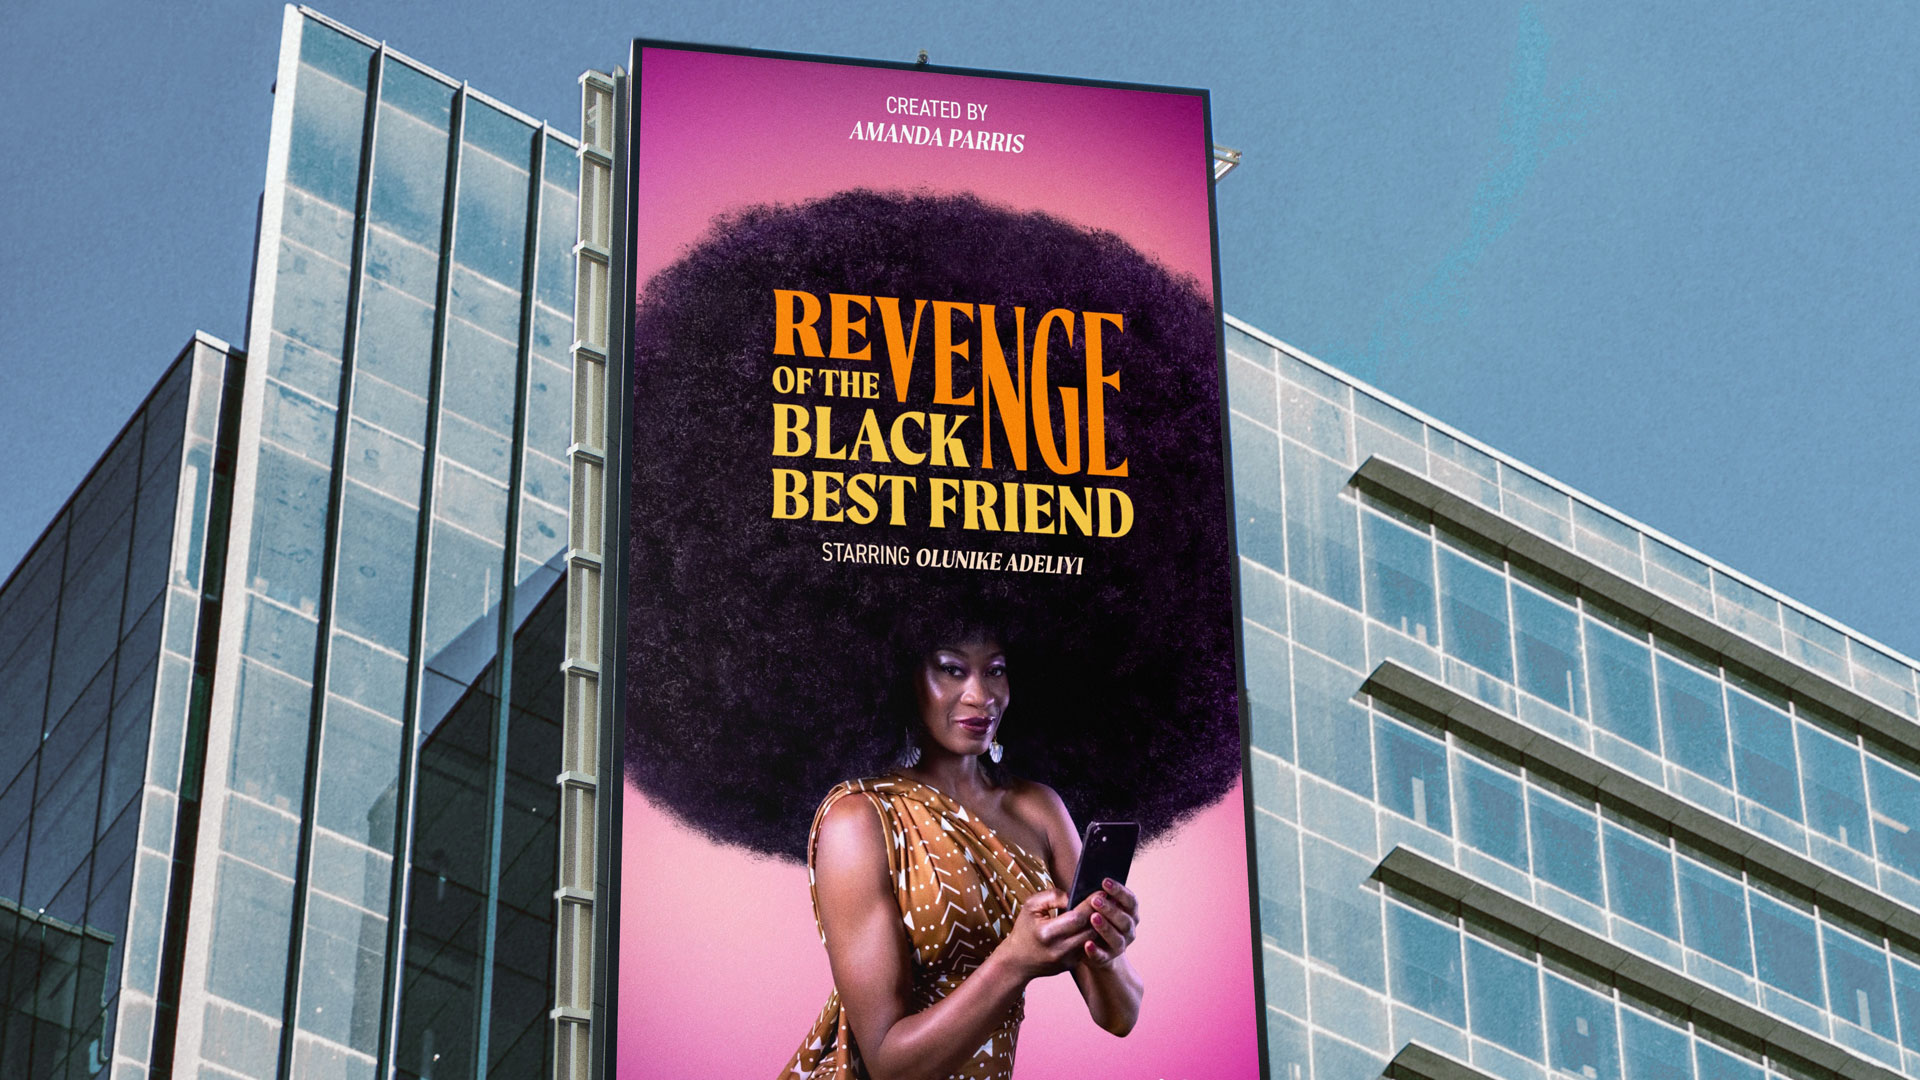 Six Cinquième crafts an adaptable logo for TV show Revenge of the Black Best Friend